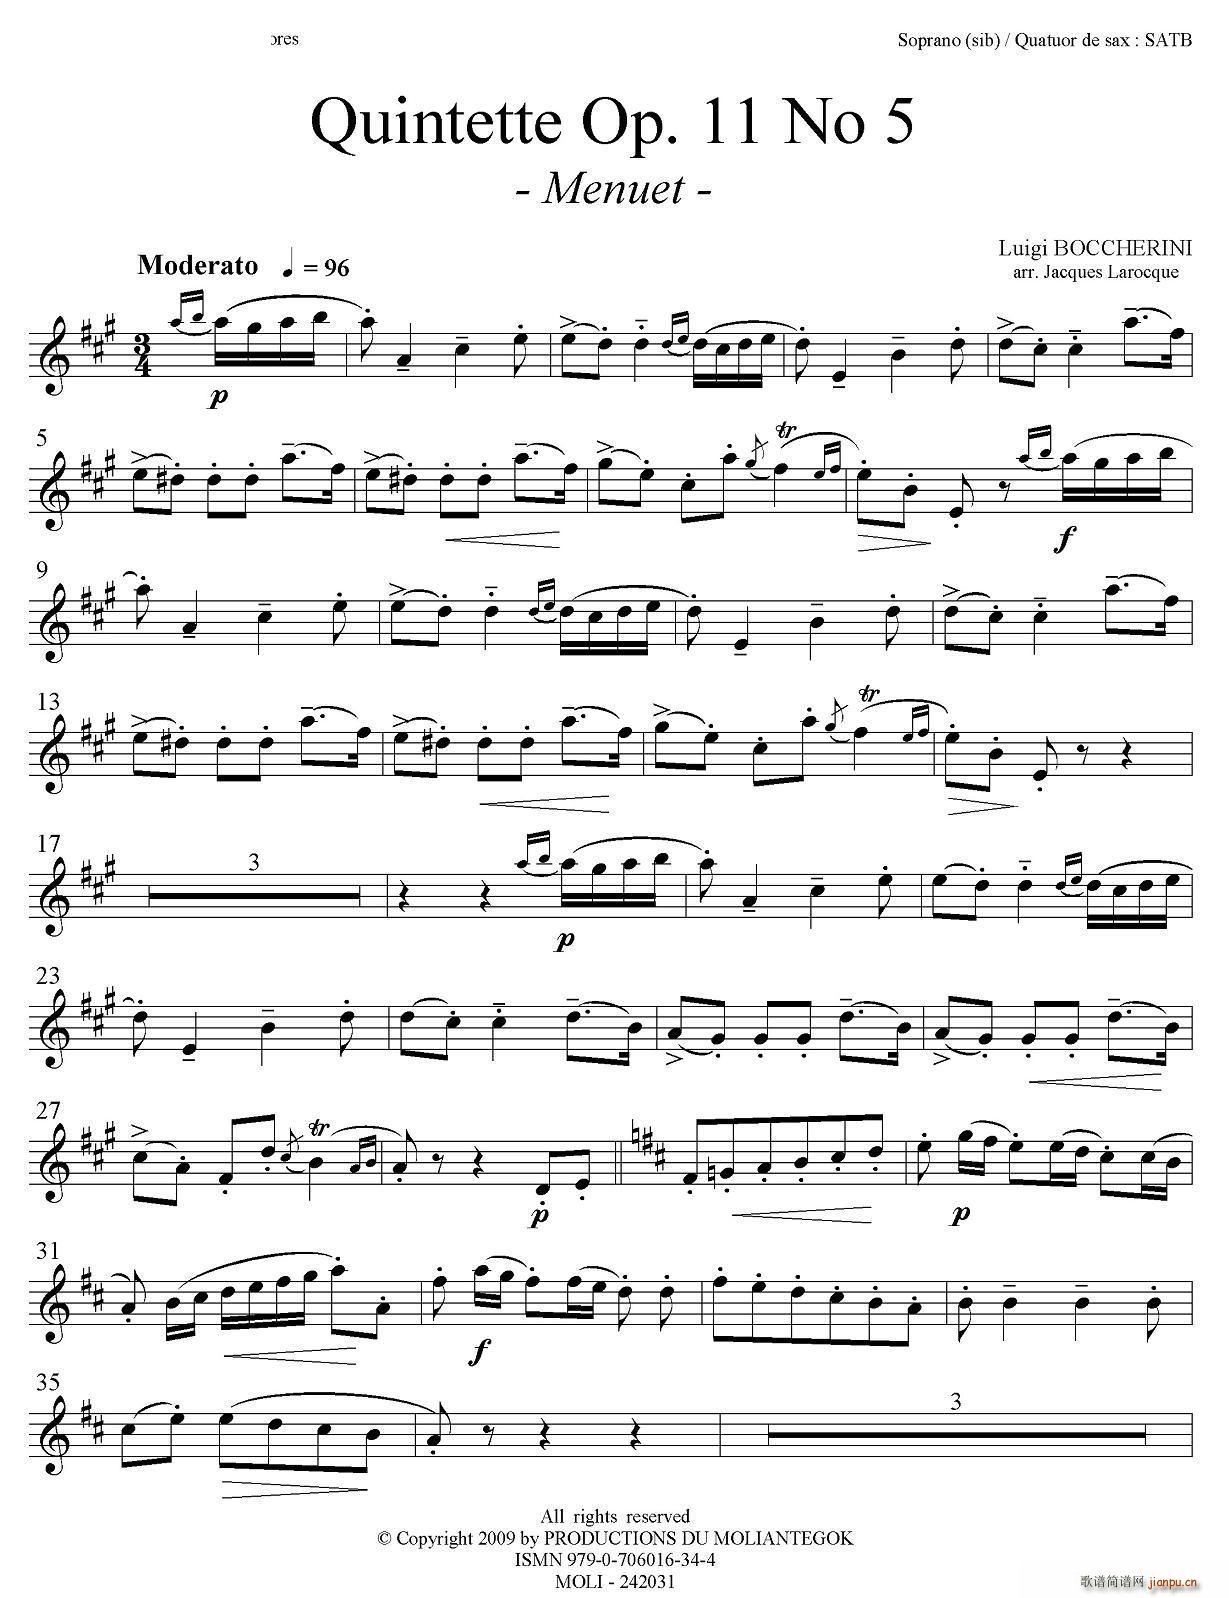 Quintette Op 11 No 5 ()5